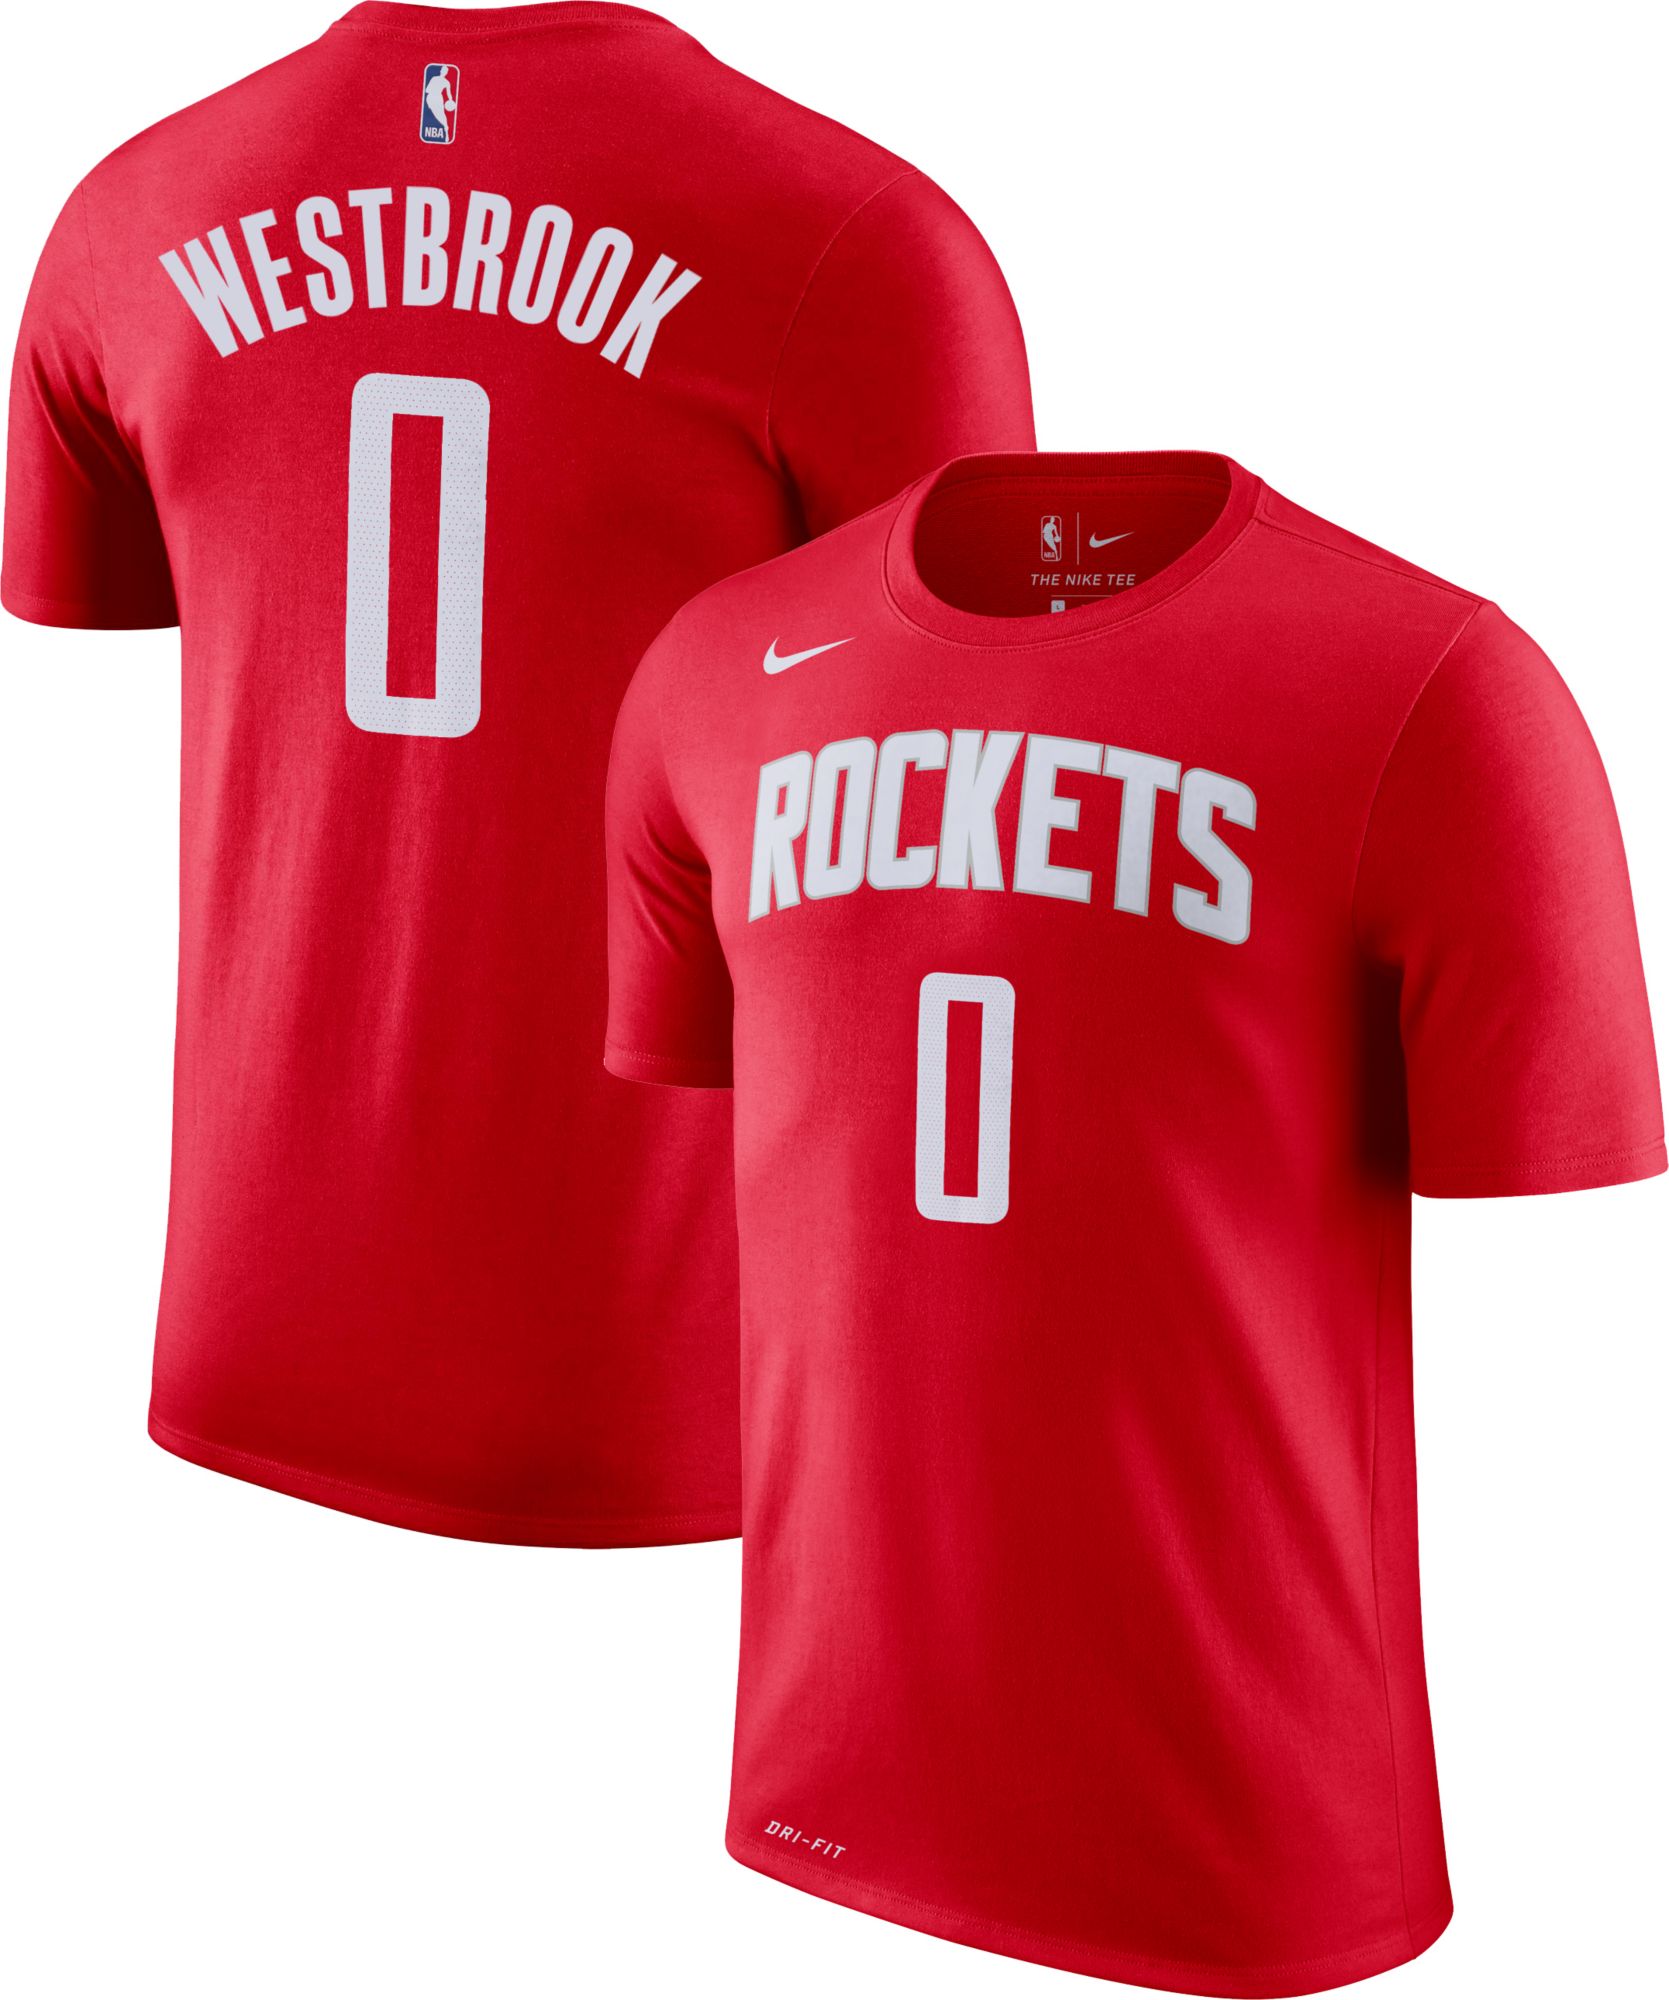 russell westbrook rocket jersey